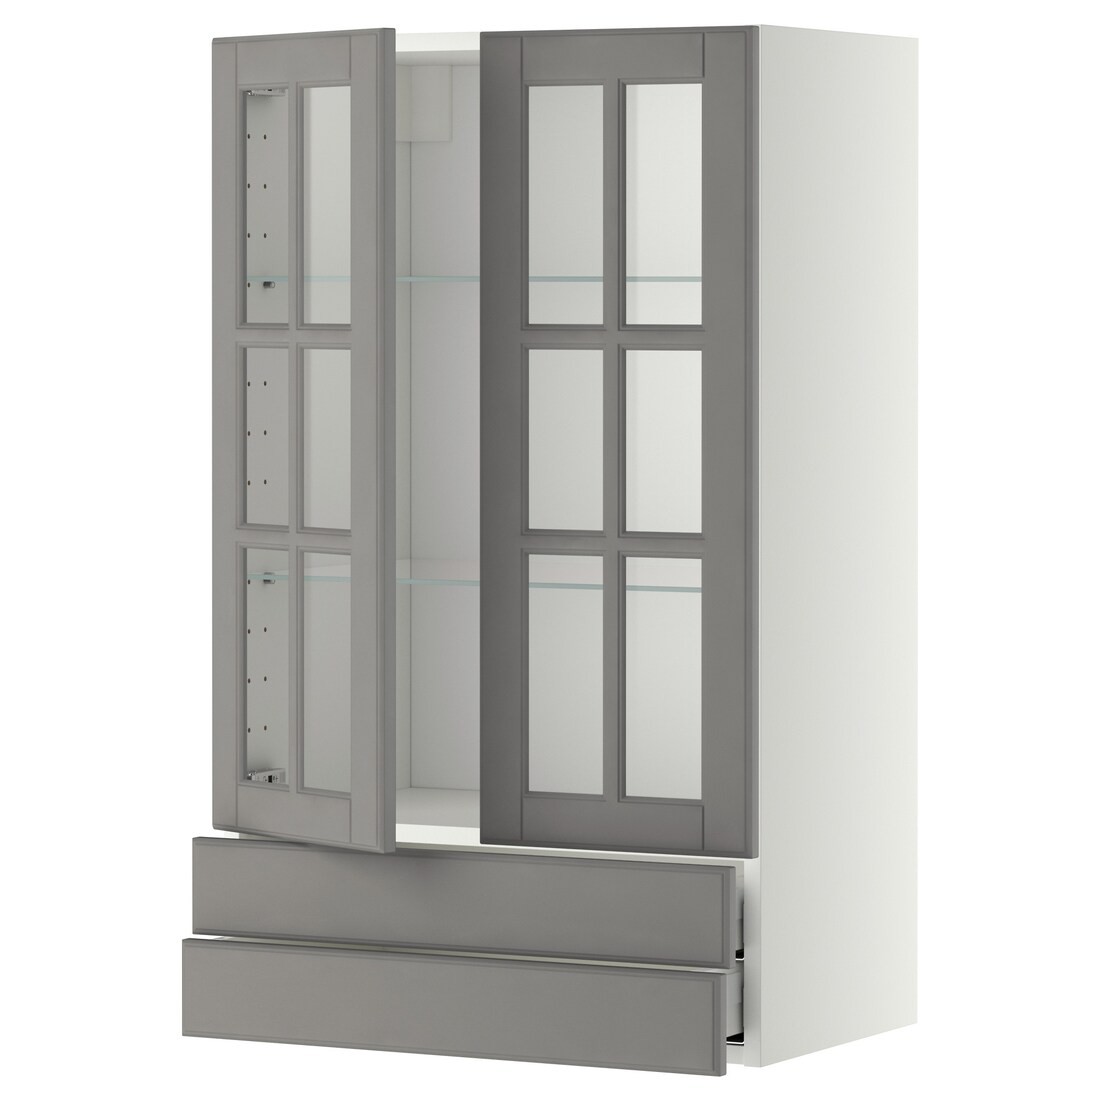 METOD МЕТОД / MAXIMERA МАКСИМЕРА Навесной шкаф / 2 стеклянные дверцы / 2 ящика, белый / Bodbyn серый, 60x100 см